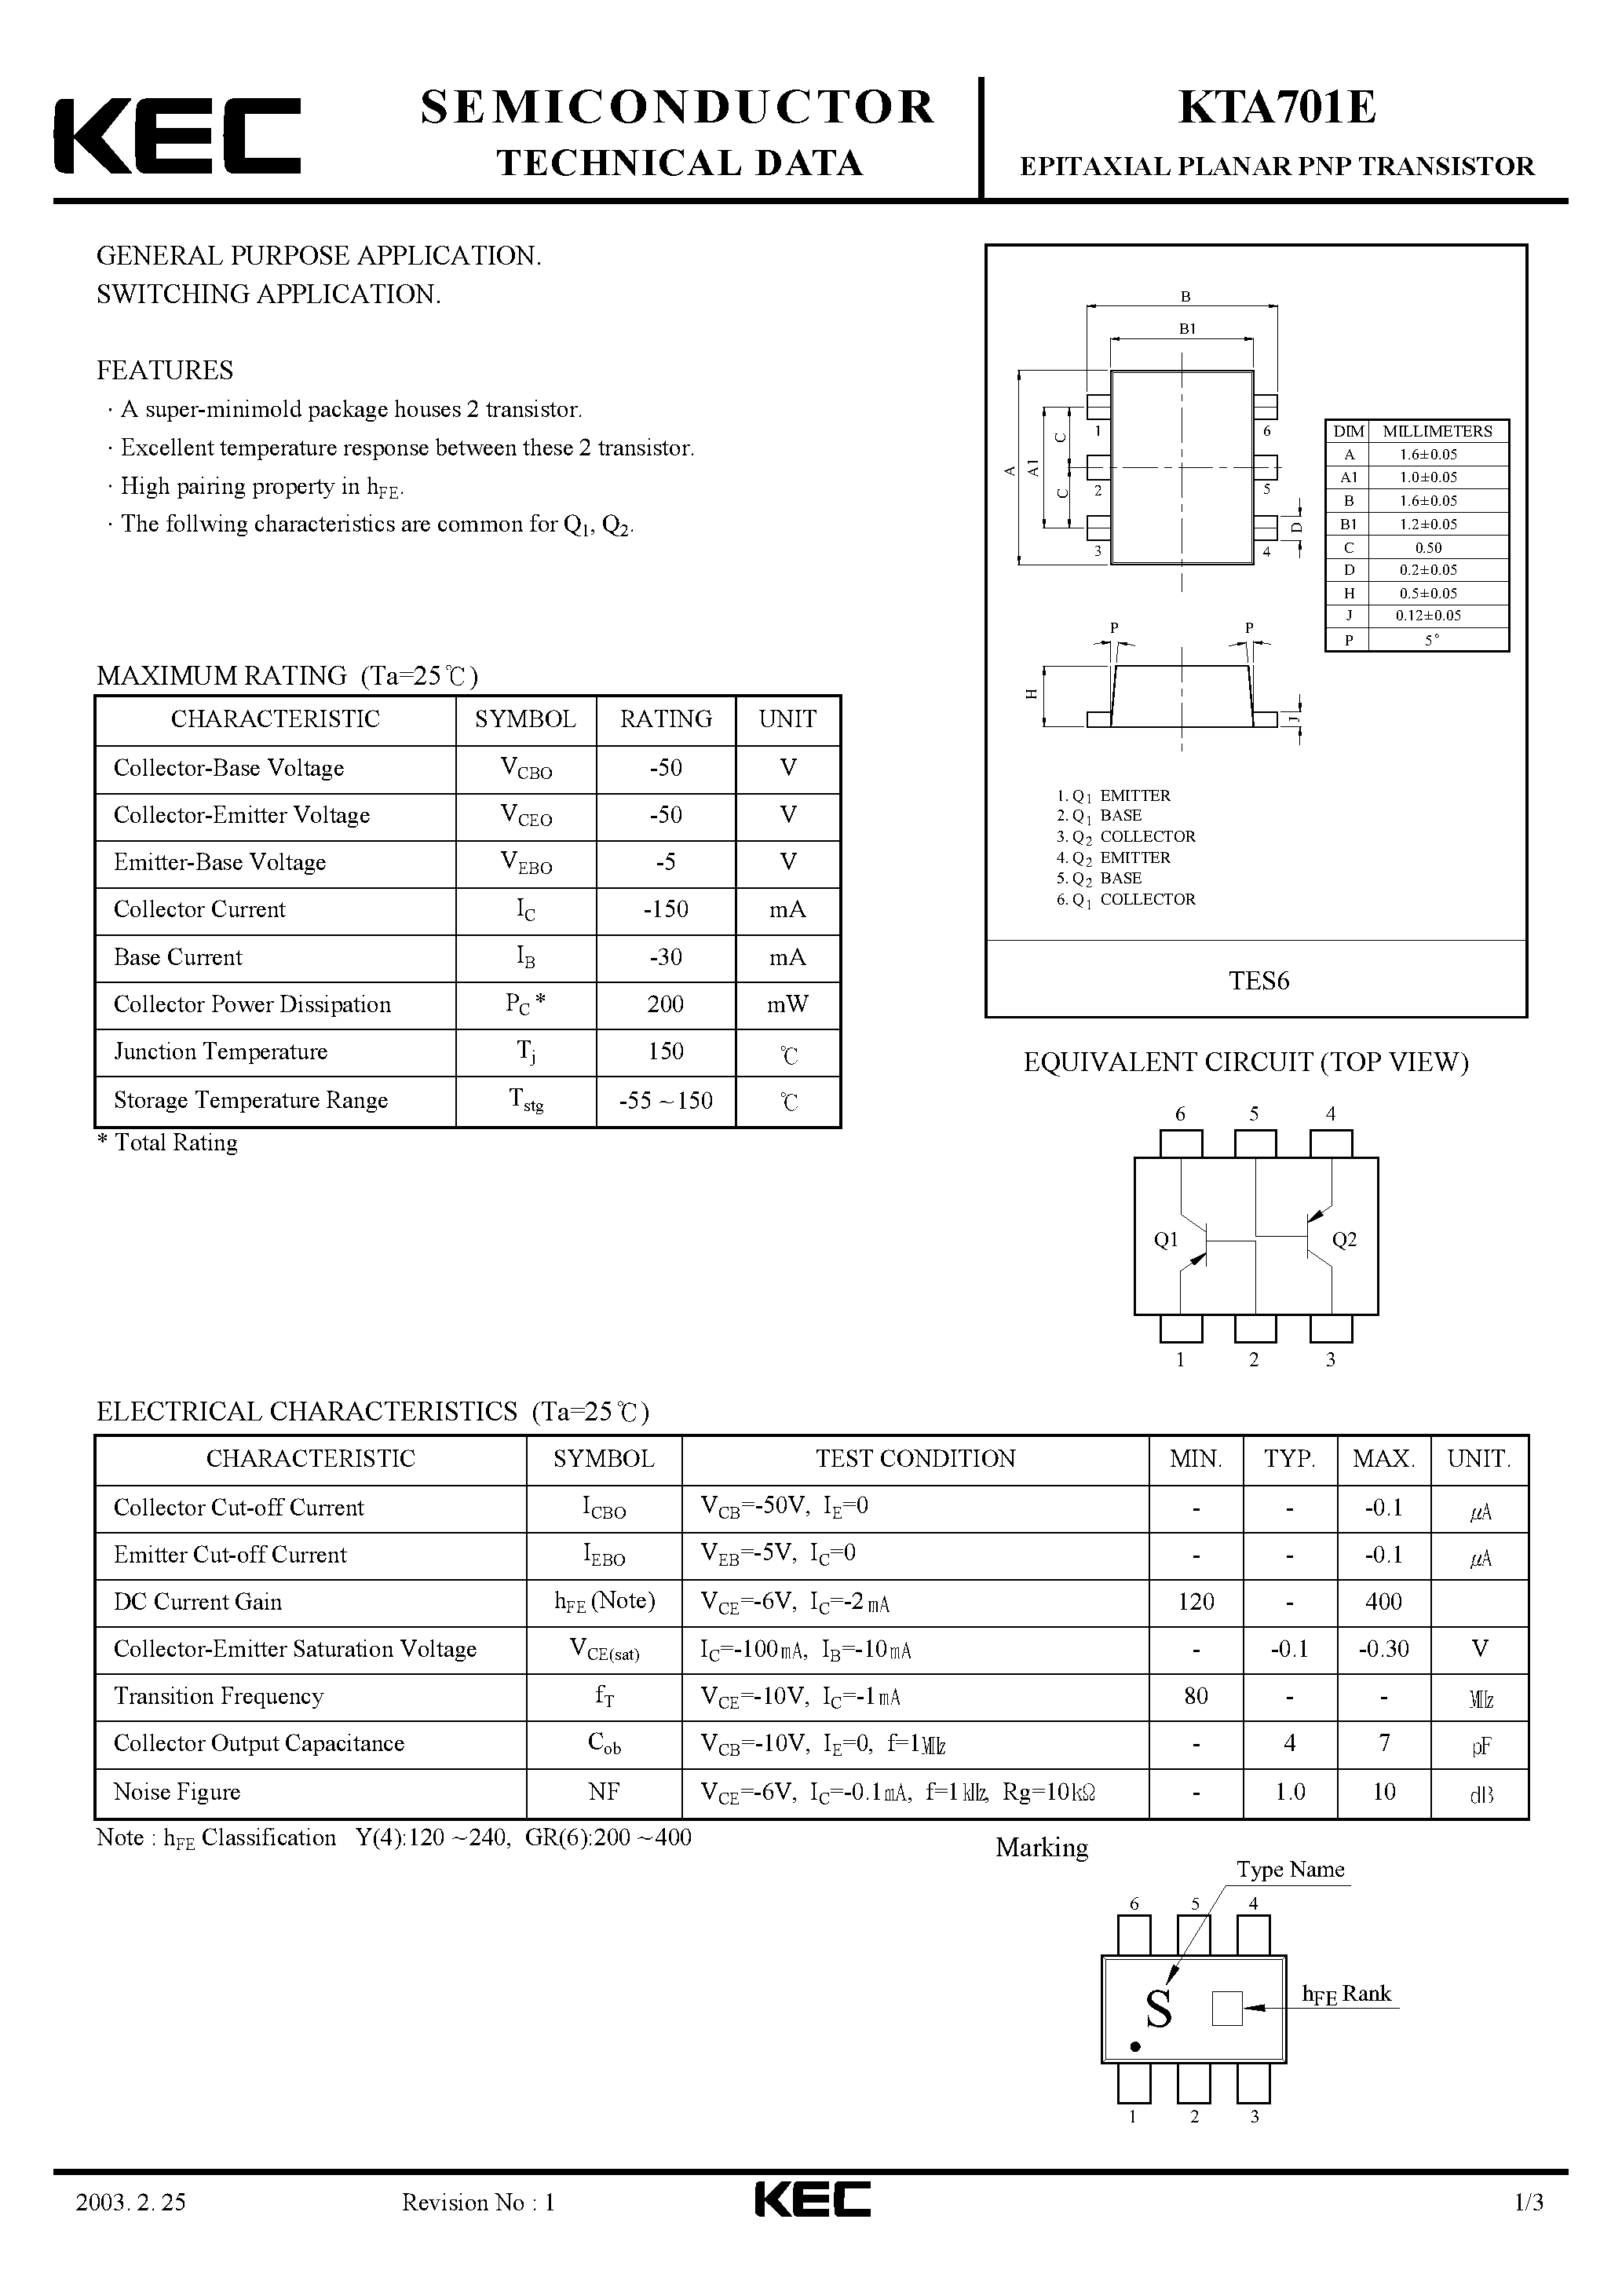 Datasheet KTA701 - EPITAXIAL PLANAR PNP TRANSISTOR (GENERAL PURPOSE/ SWITCHING) page 1